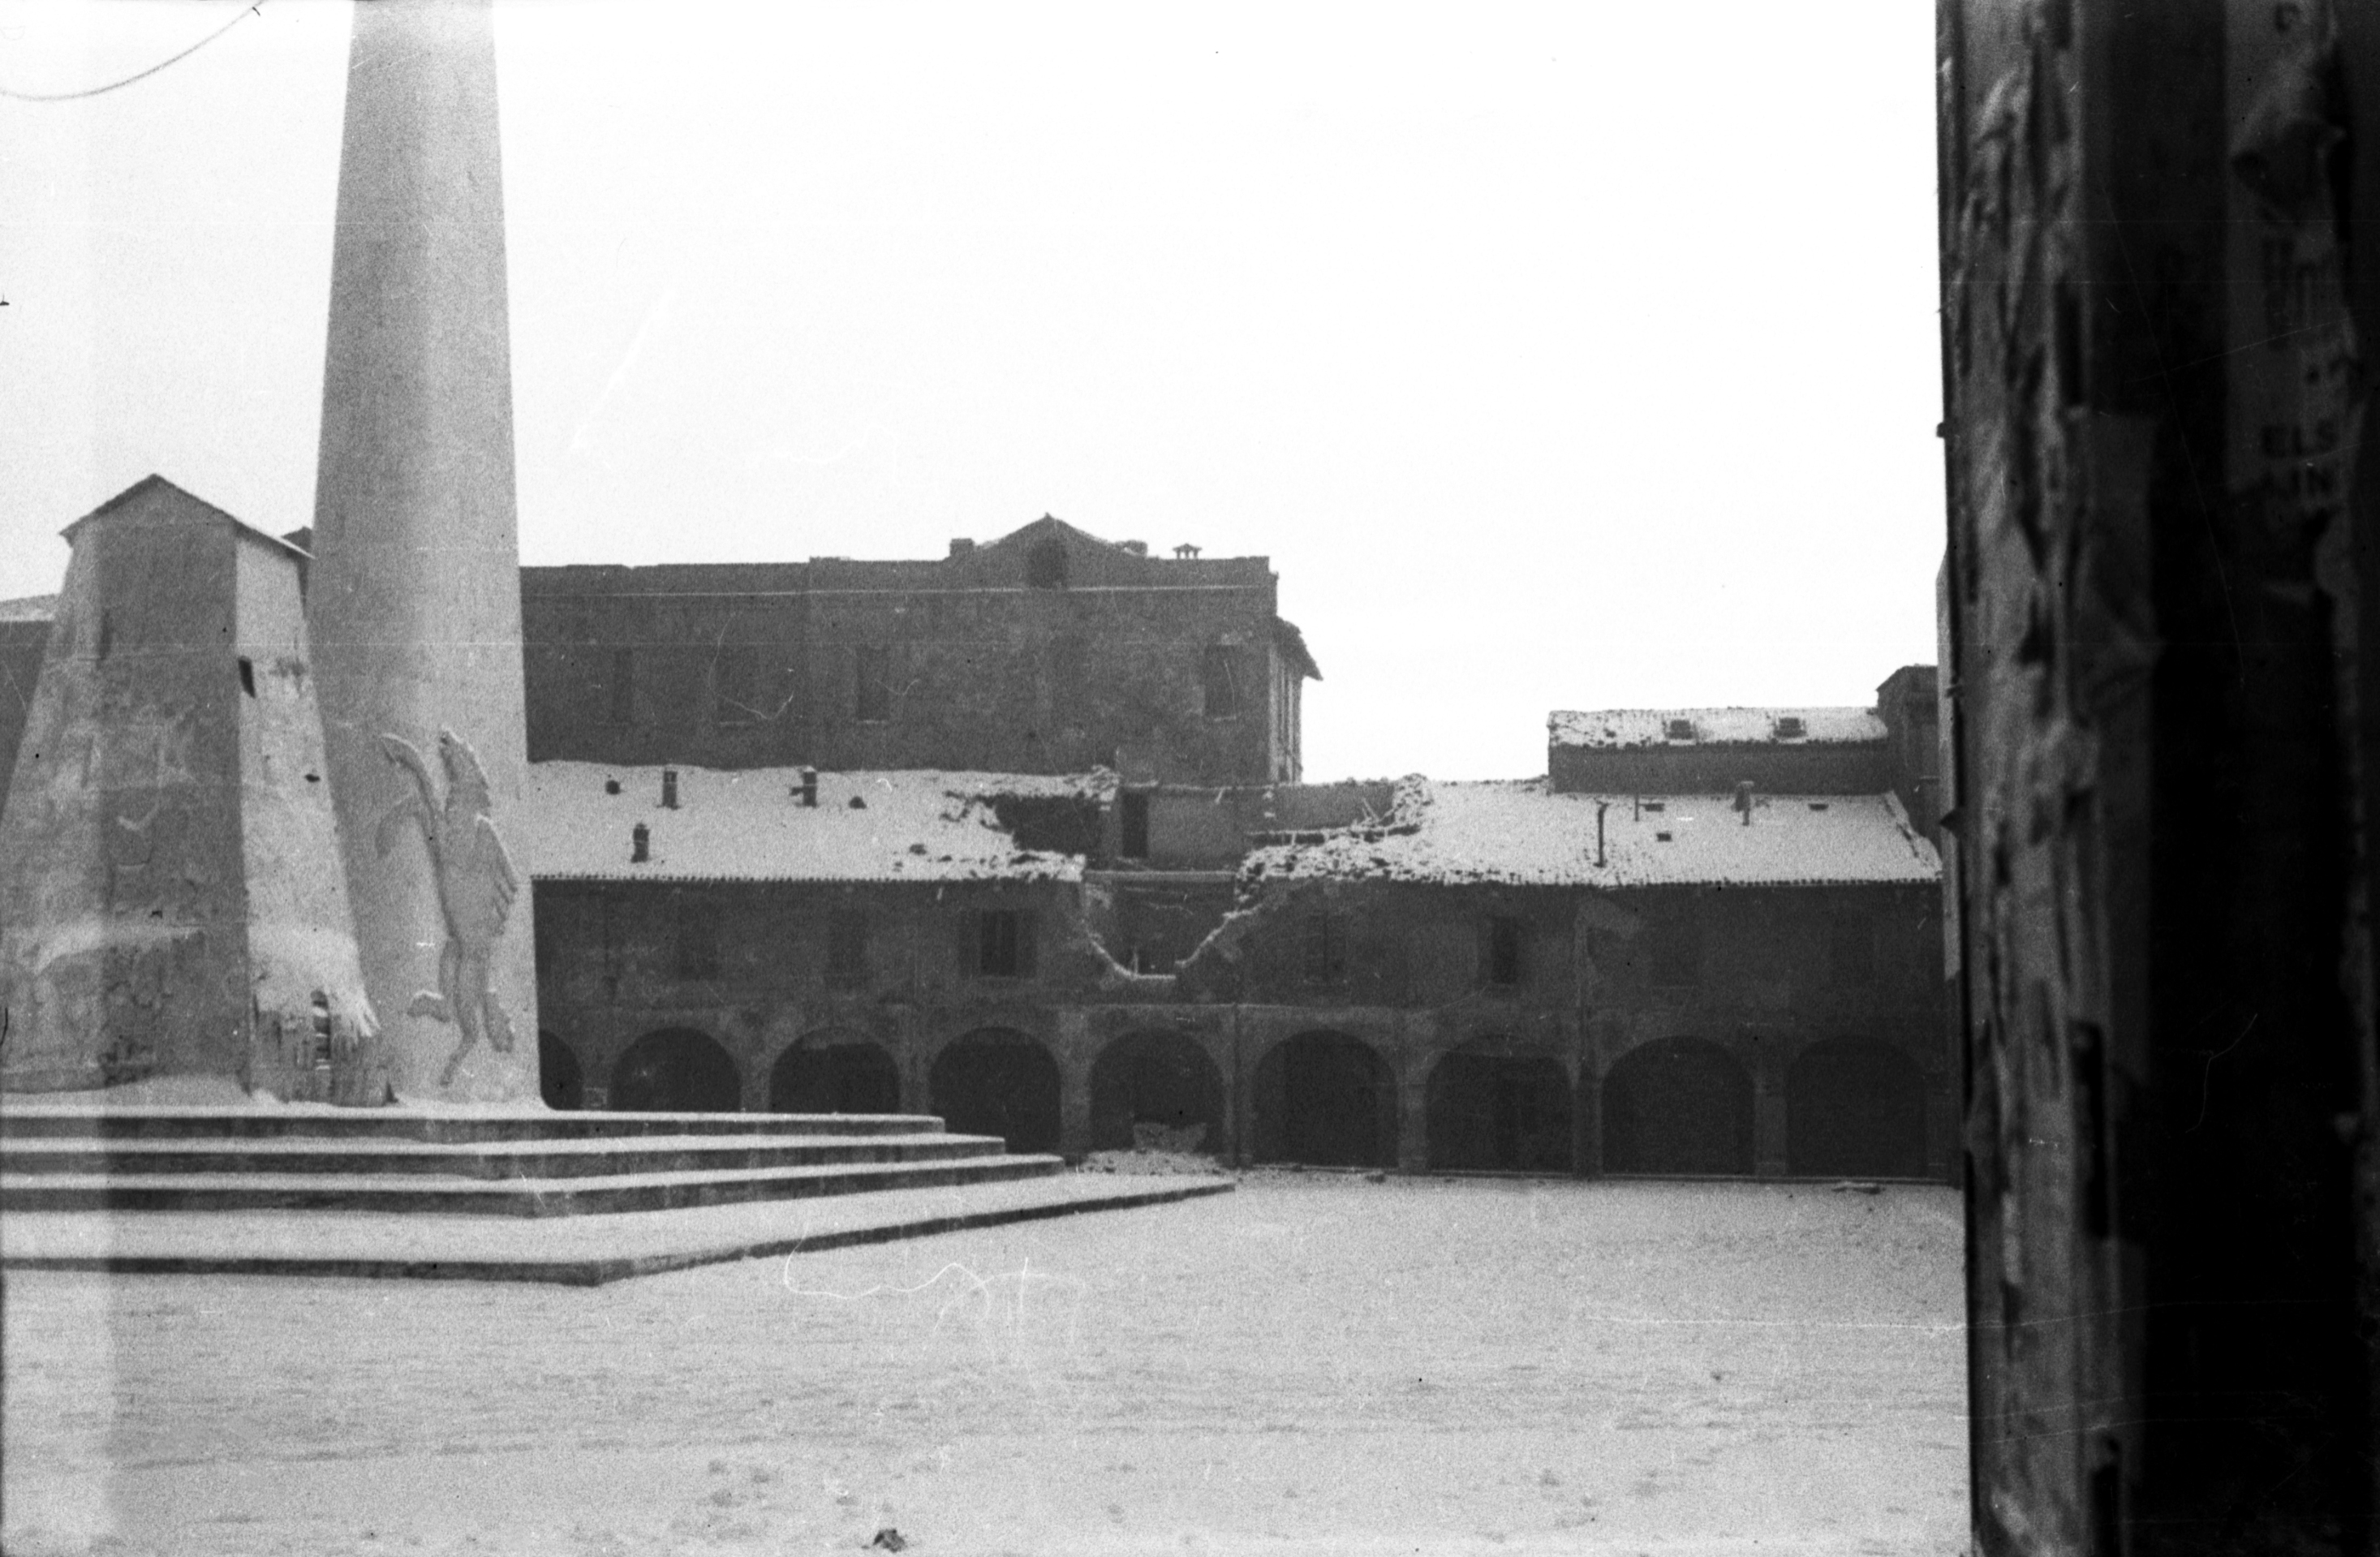 Fig. 13. La casseratura della statua in bronzo di Baracca in una fotografia del 9 gennaio 1945 [foto A. Giovannini, Archivio Istituto storico di Ravenna].